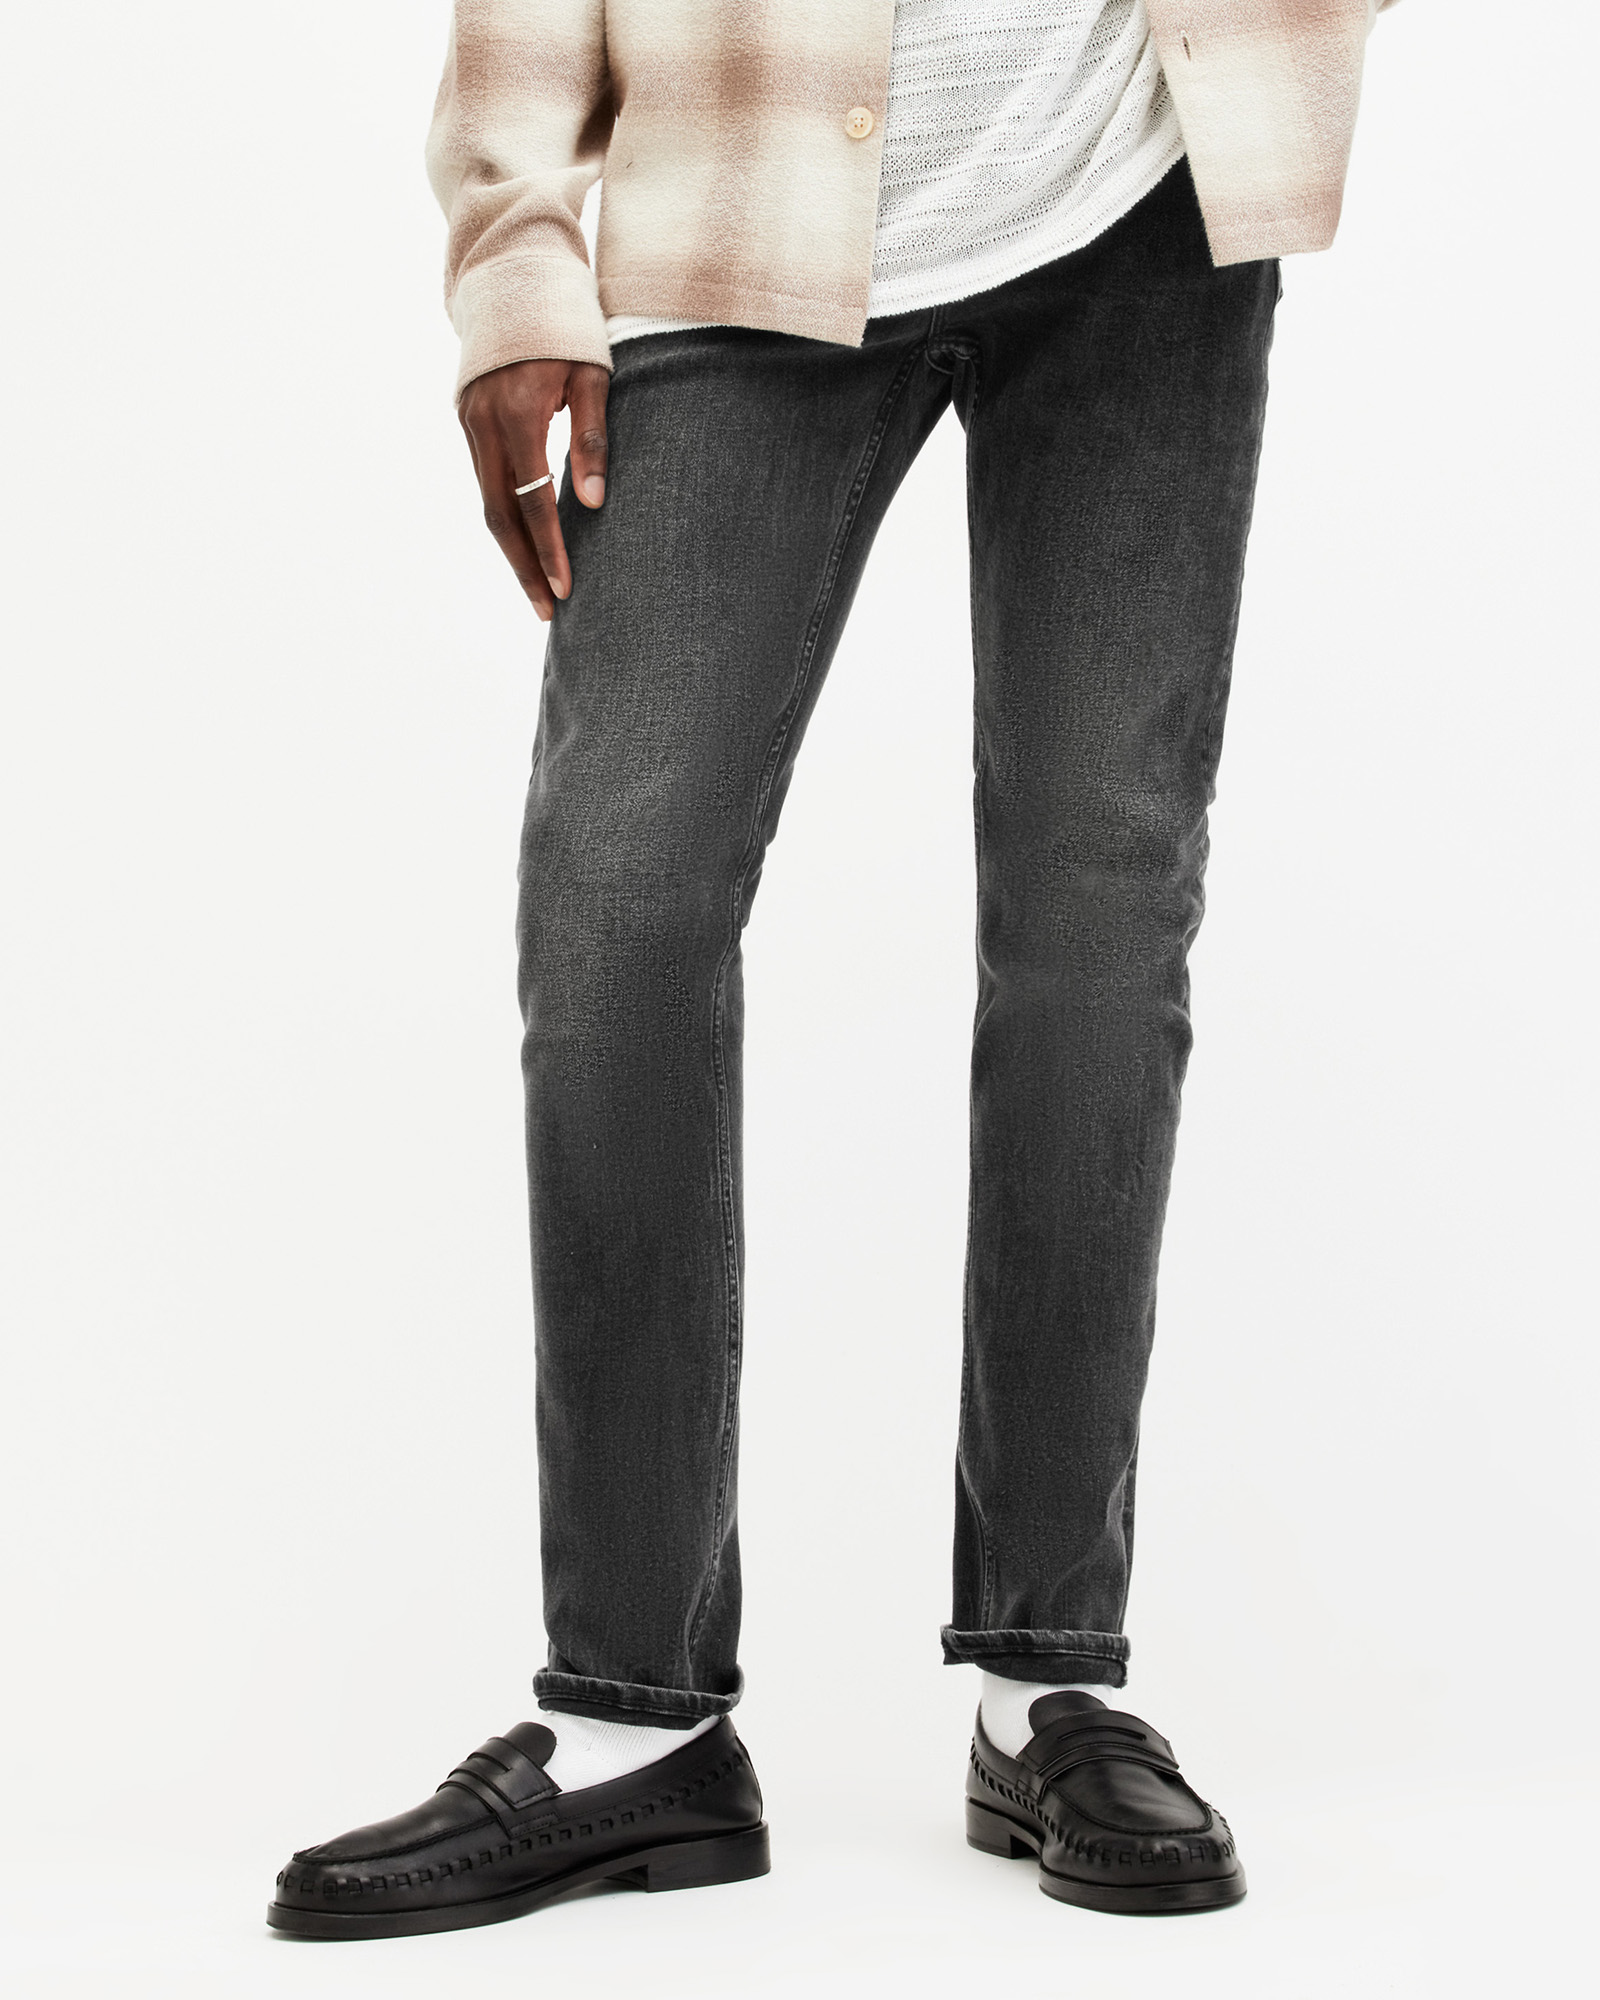 AllSaints Men's Cotton Traditional Cigarette Skinny Jeans, Black, Size: 38/L30